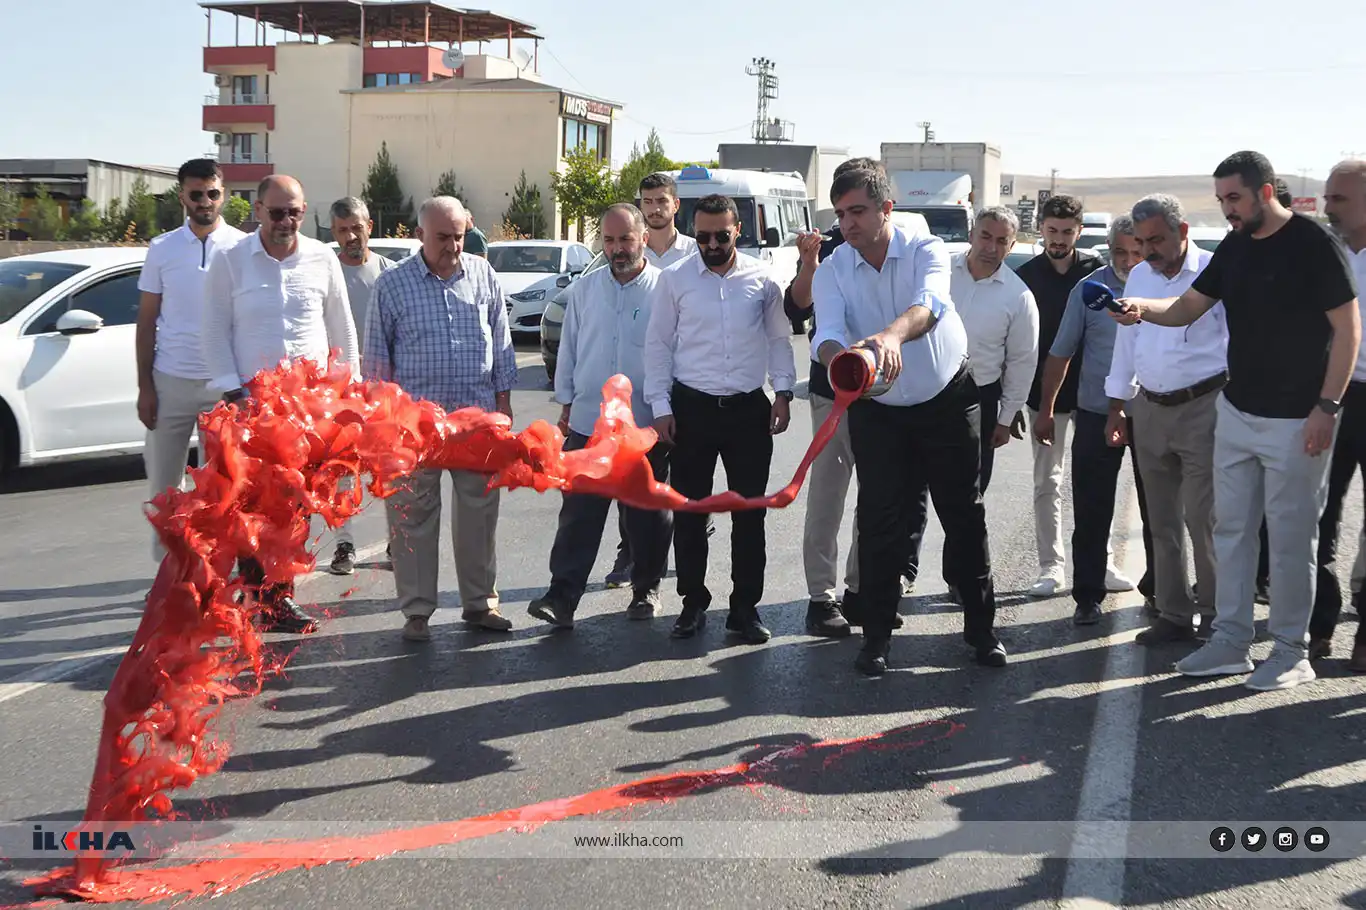 HÜDA PAR lawmaker blocks road in protest over fatal accident